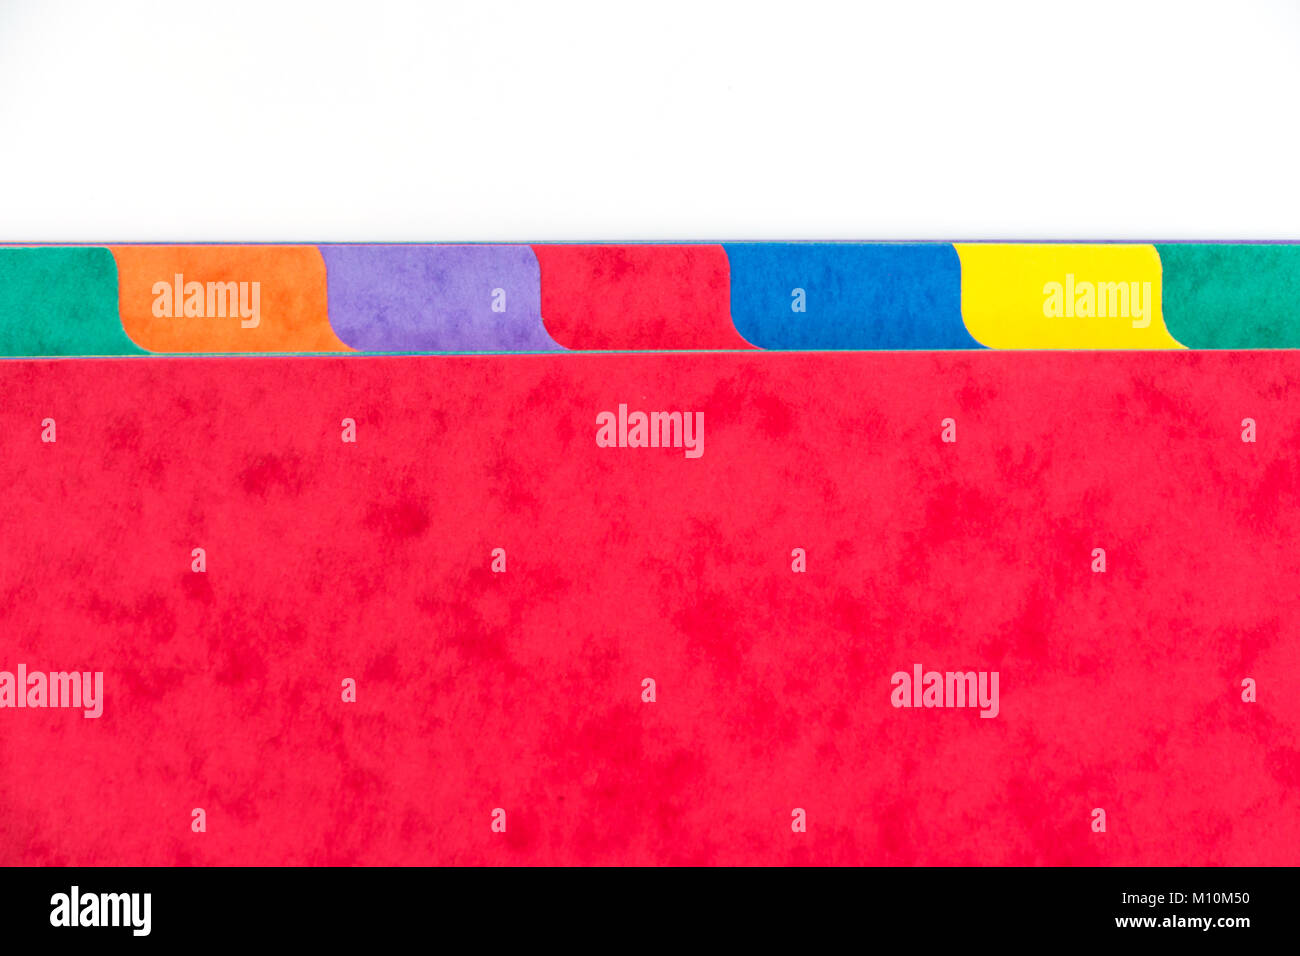 Photo du dossier colorés avec des diviseurs copie espace, fond blanc Banque D'Images